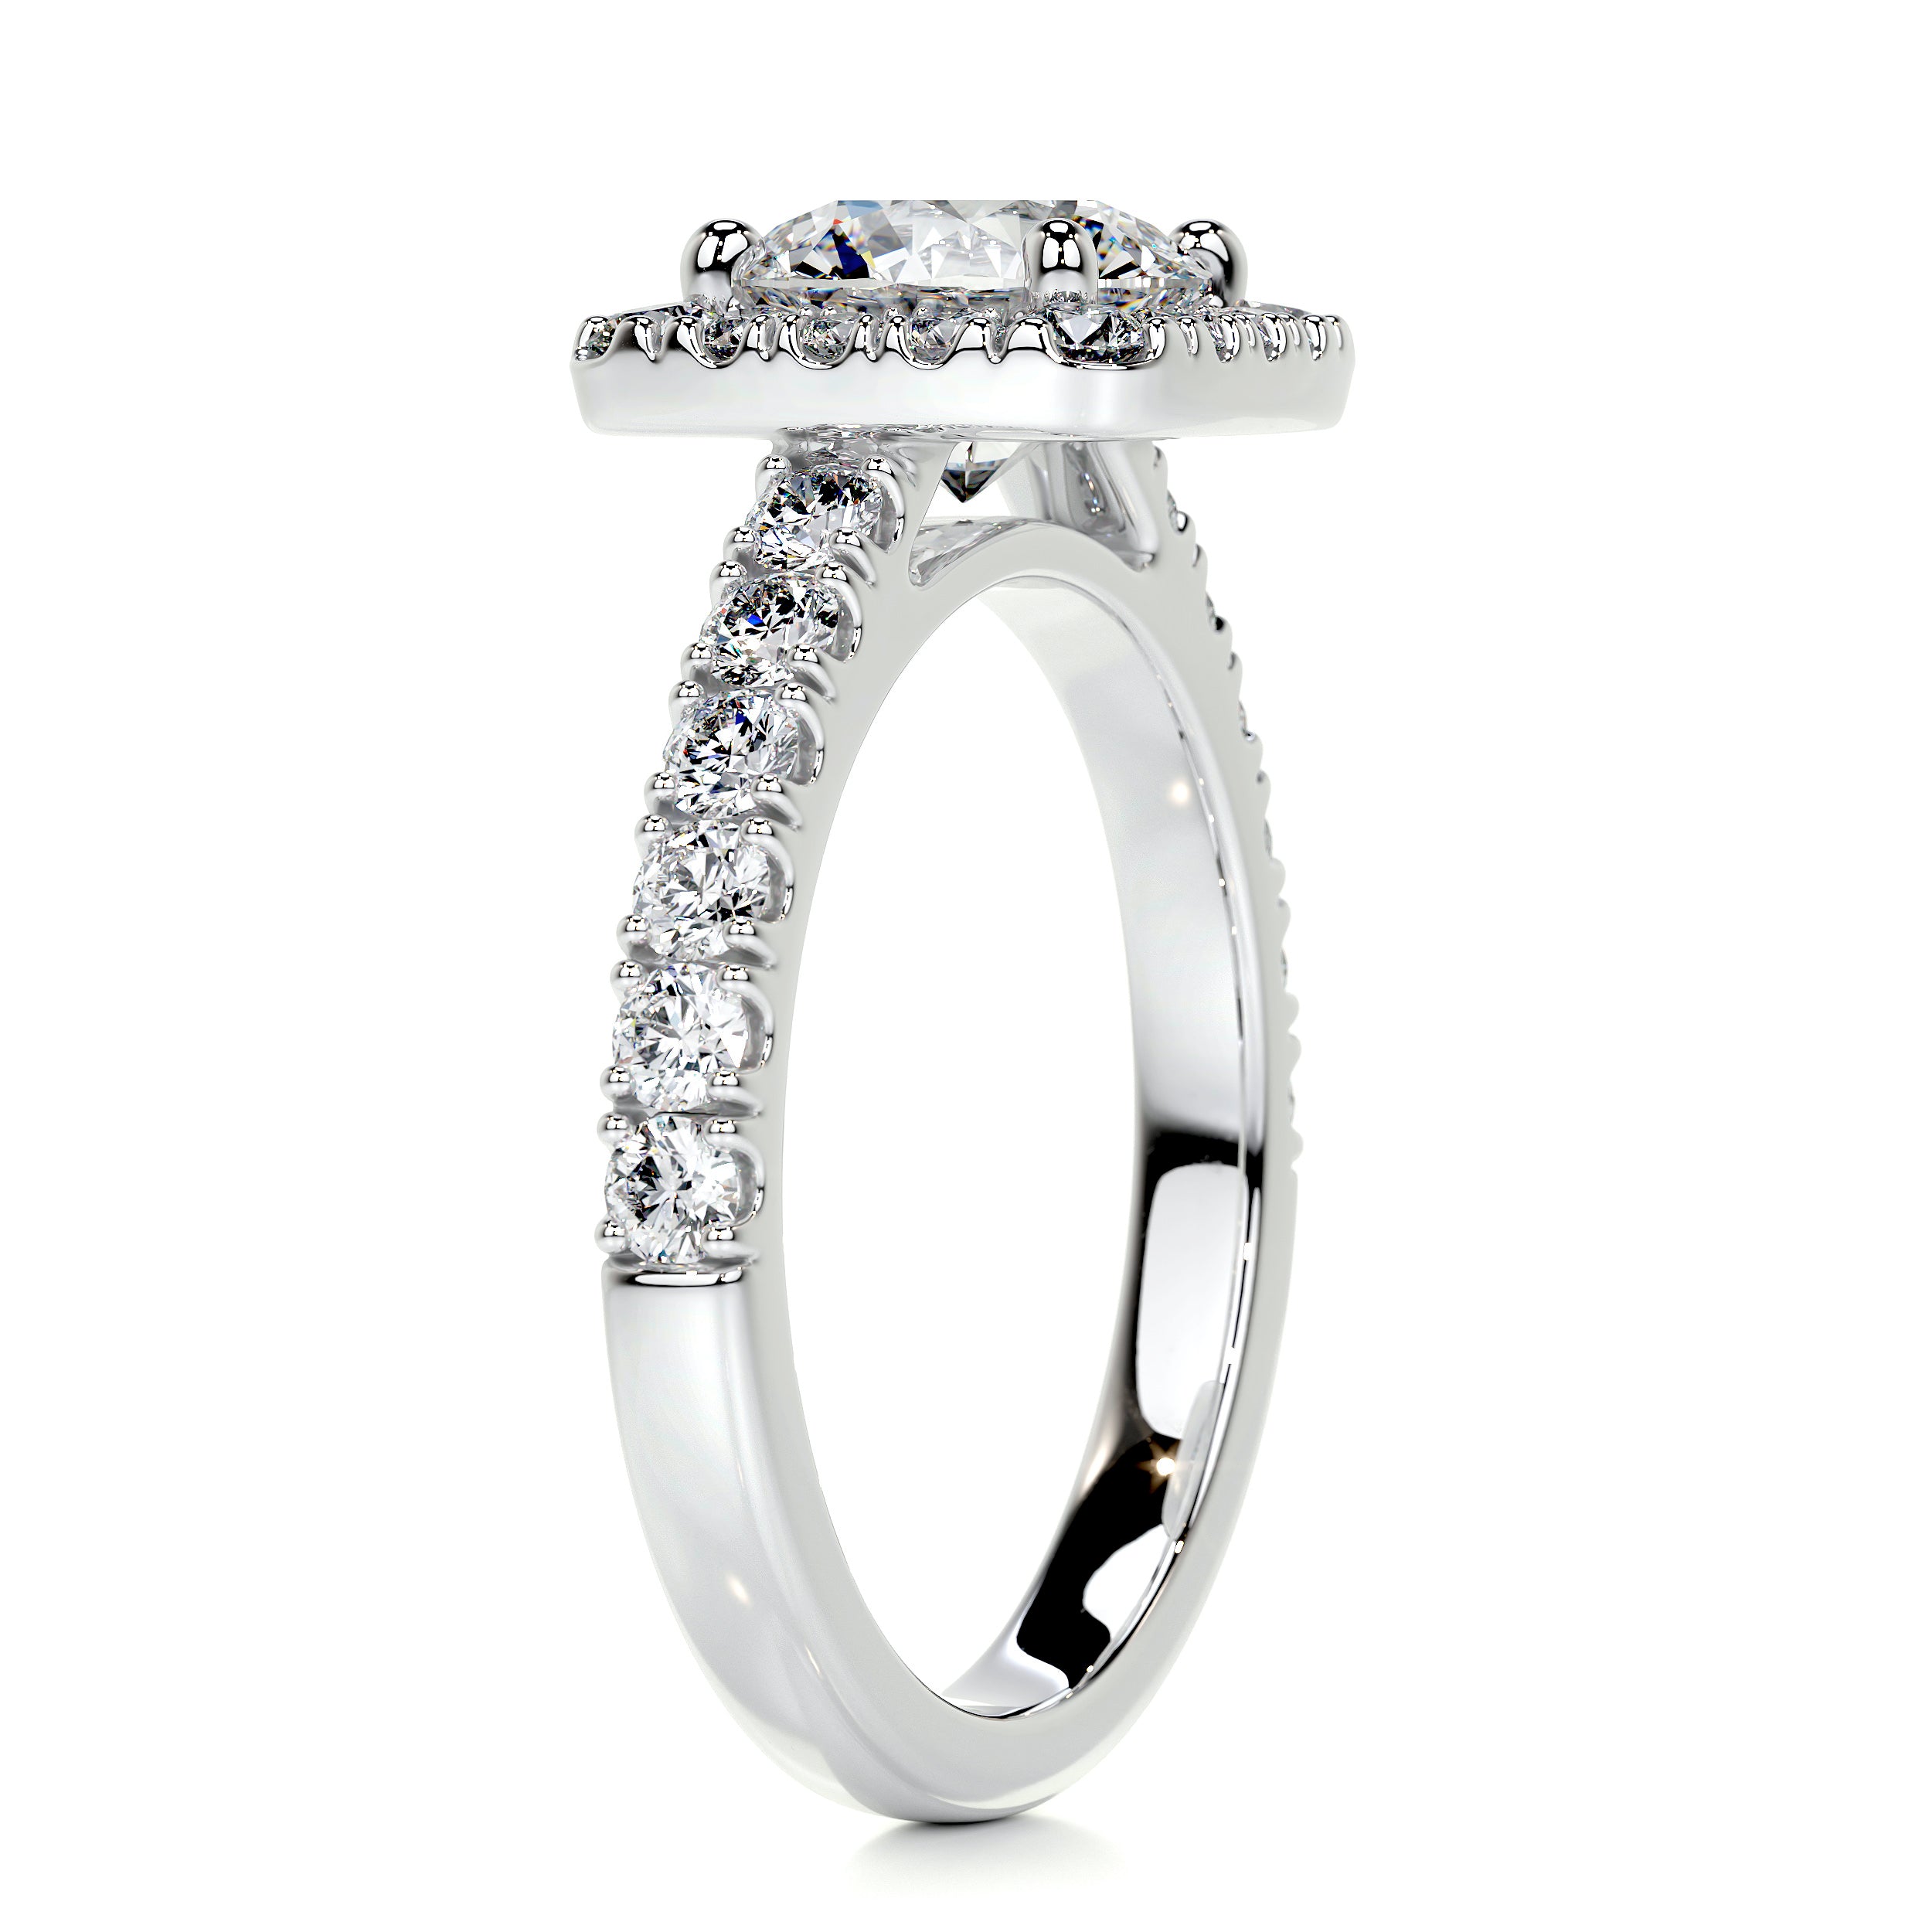 Sienna Diamond Engagement Ring   (2 Carat) -14K White Gold